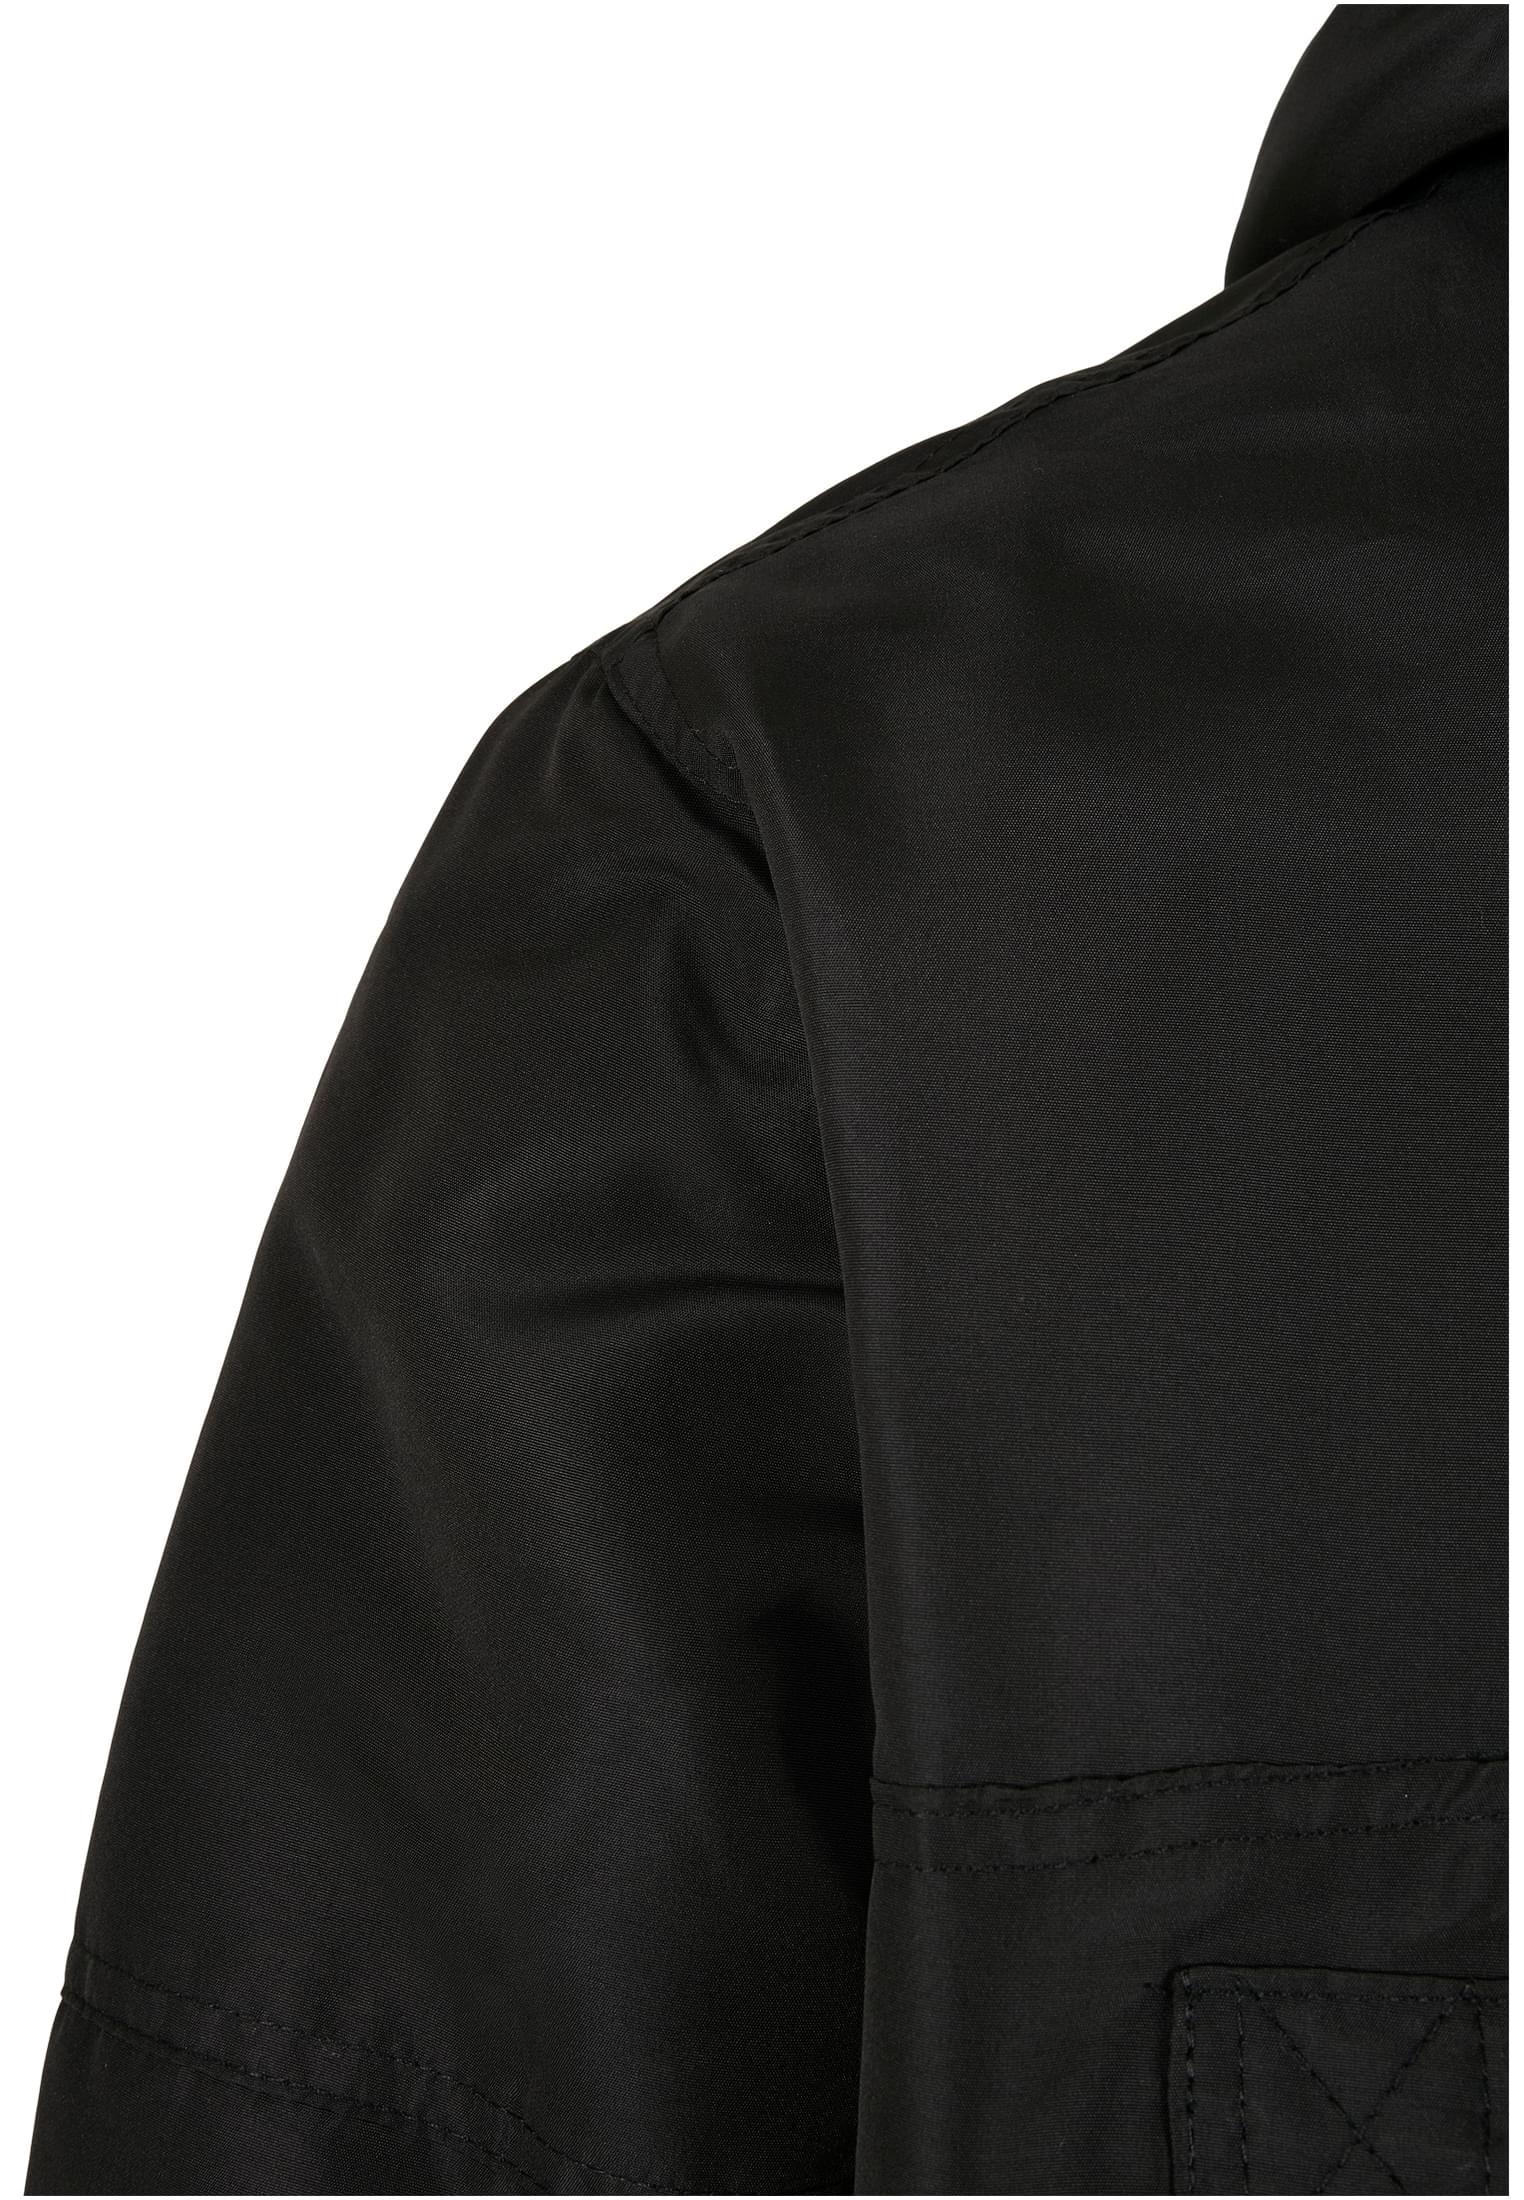 Jacken Windbreaker Sherpa in Farbe black